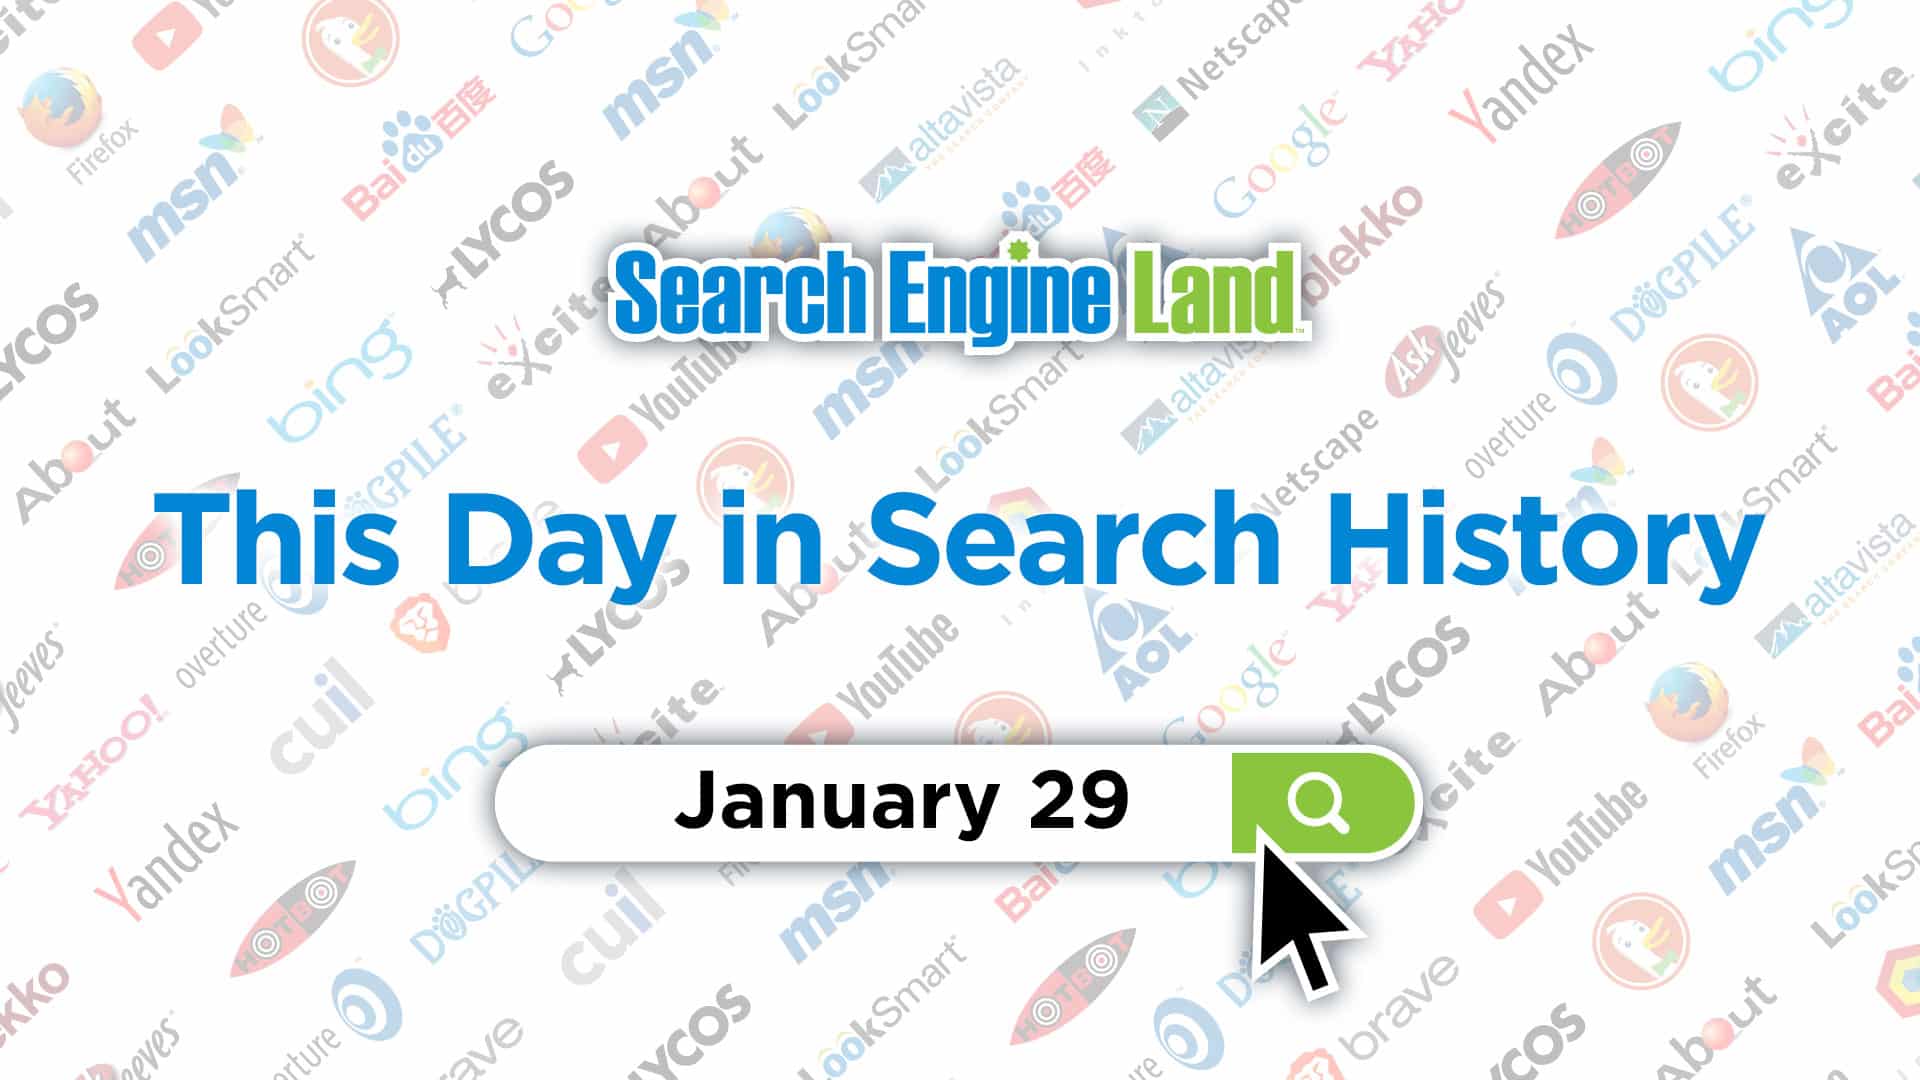 Este día en la historia del marketing de búsqueda: 29 de enero